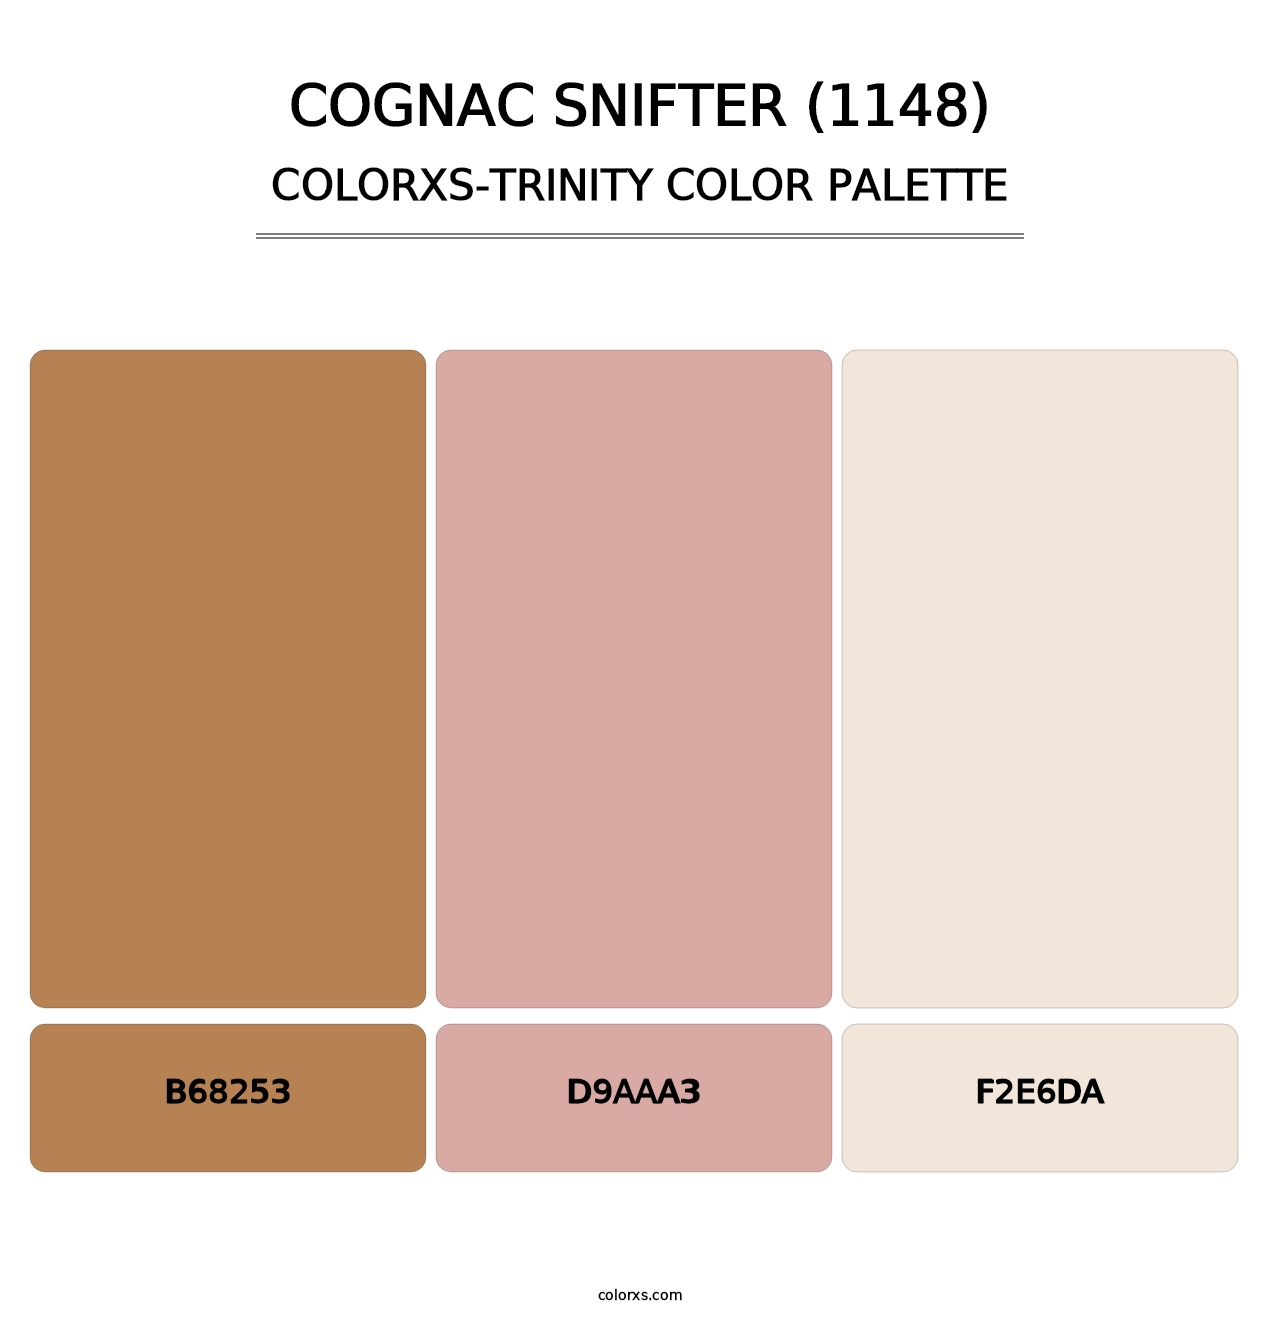 Cognac Snifter (1148) - Colorxs Trinity Palette